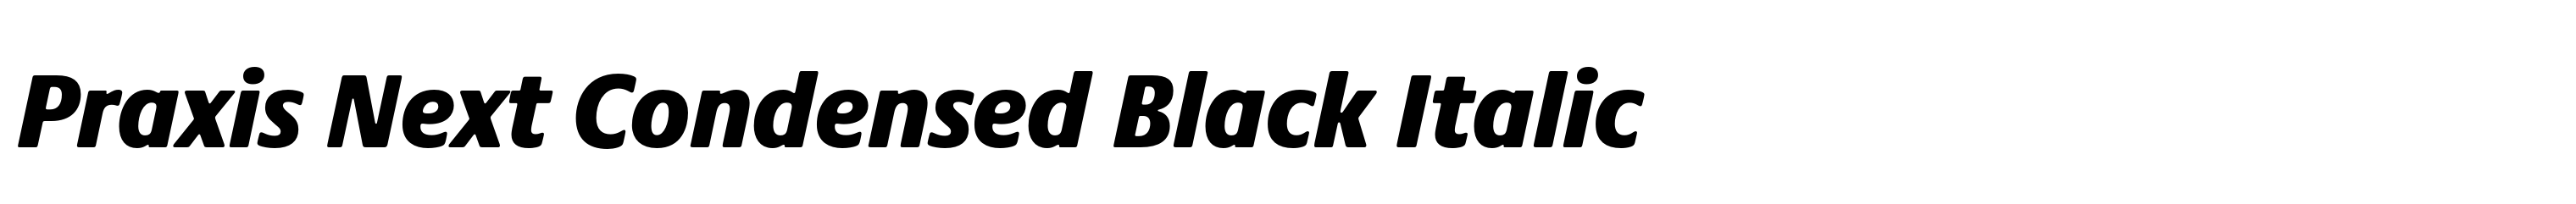 Praxis Next Condensed Black Italic